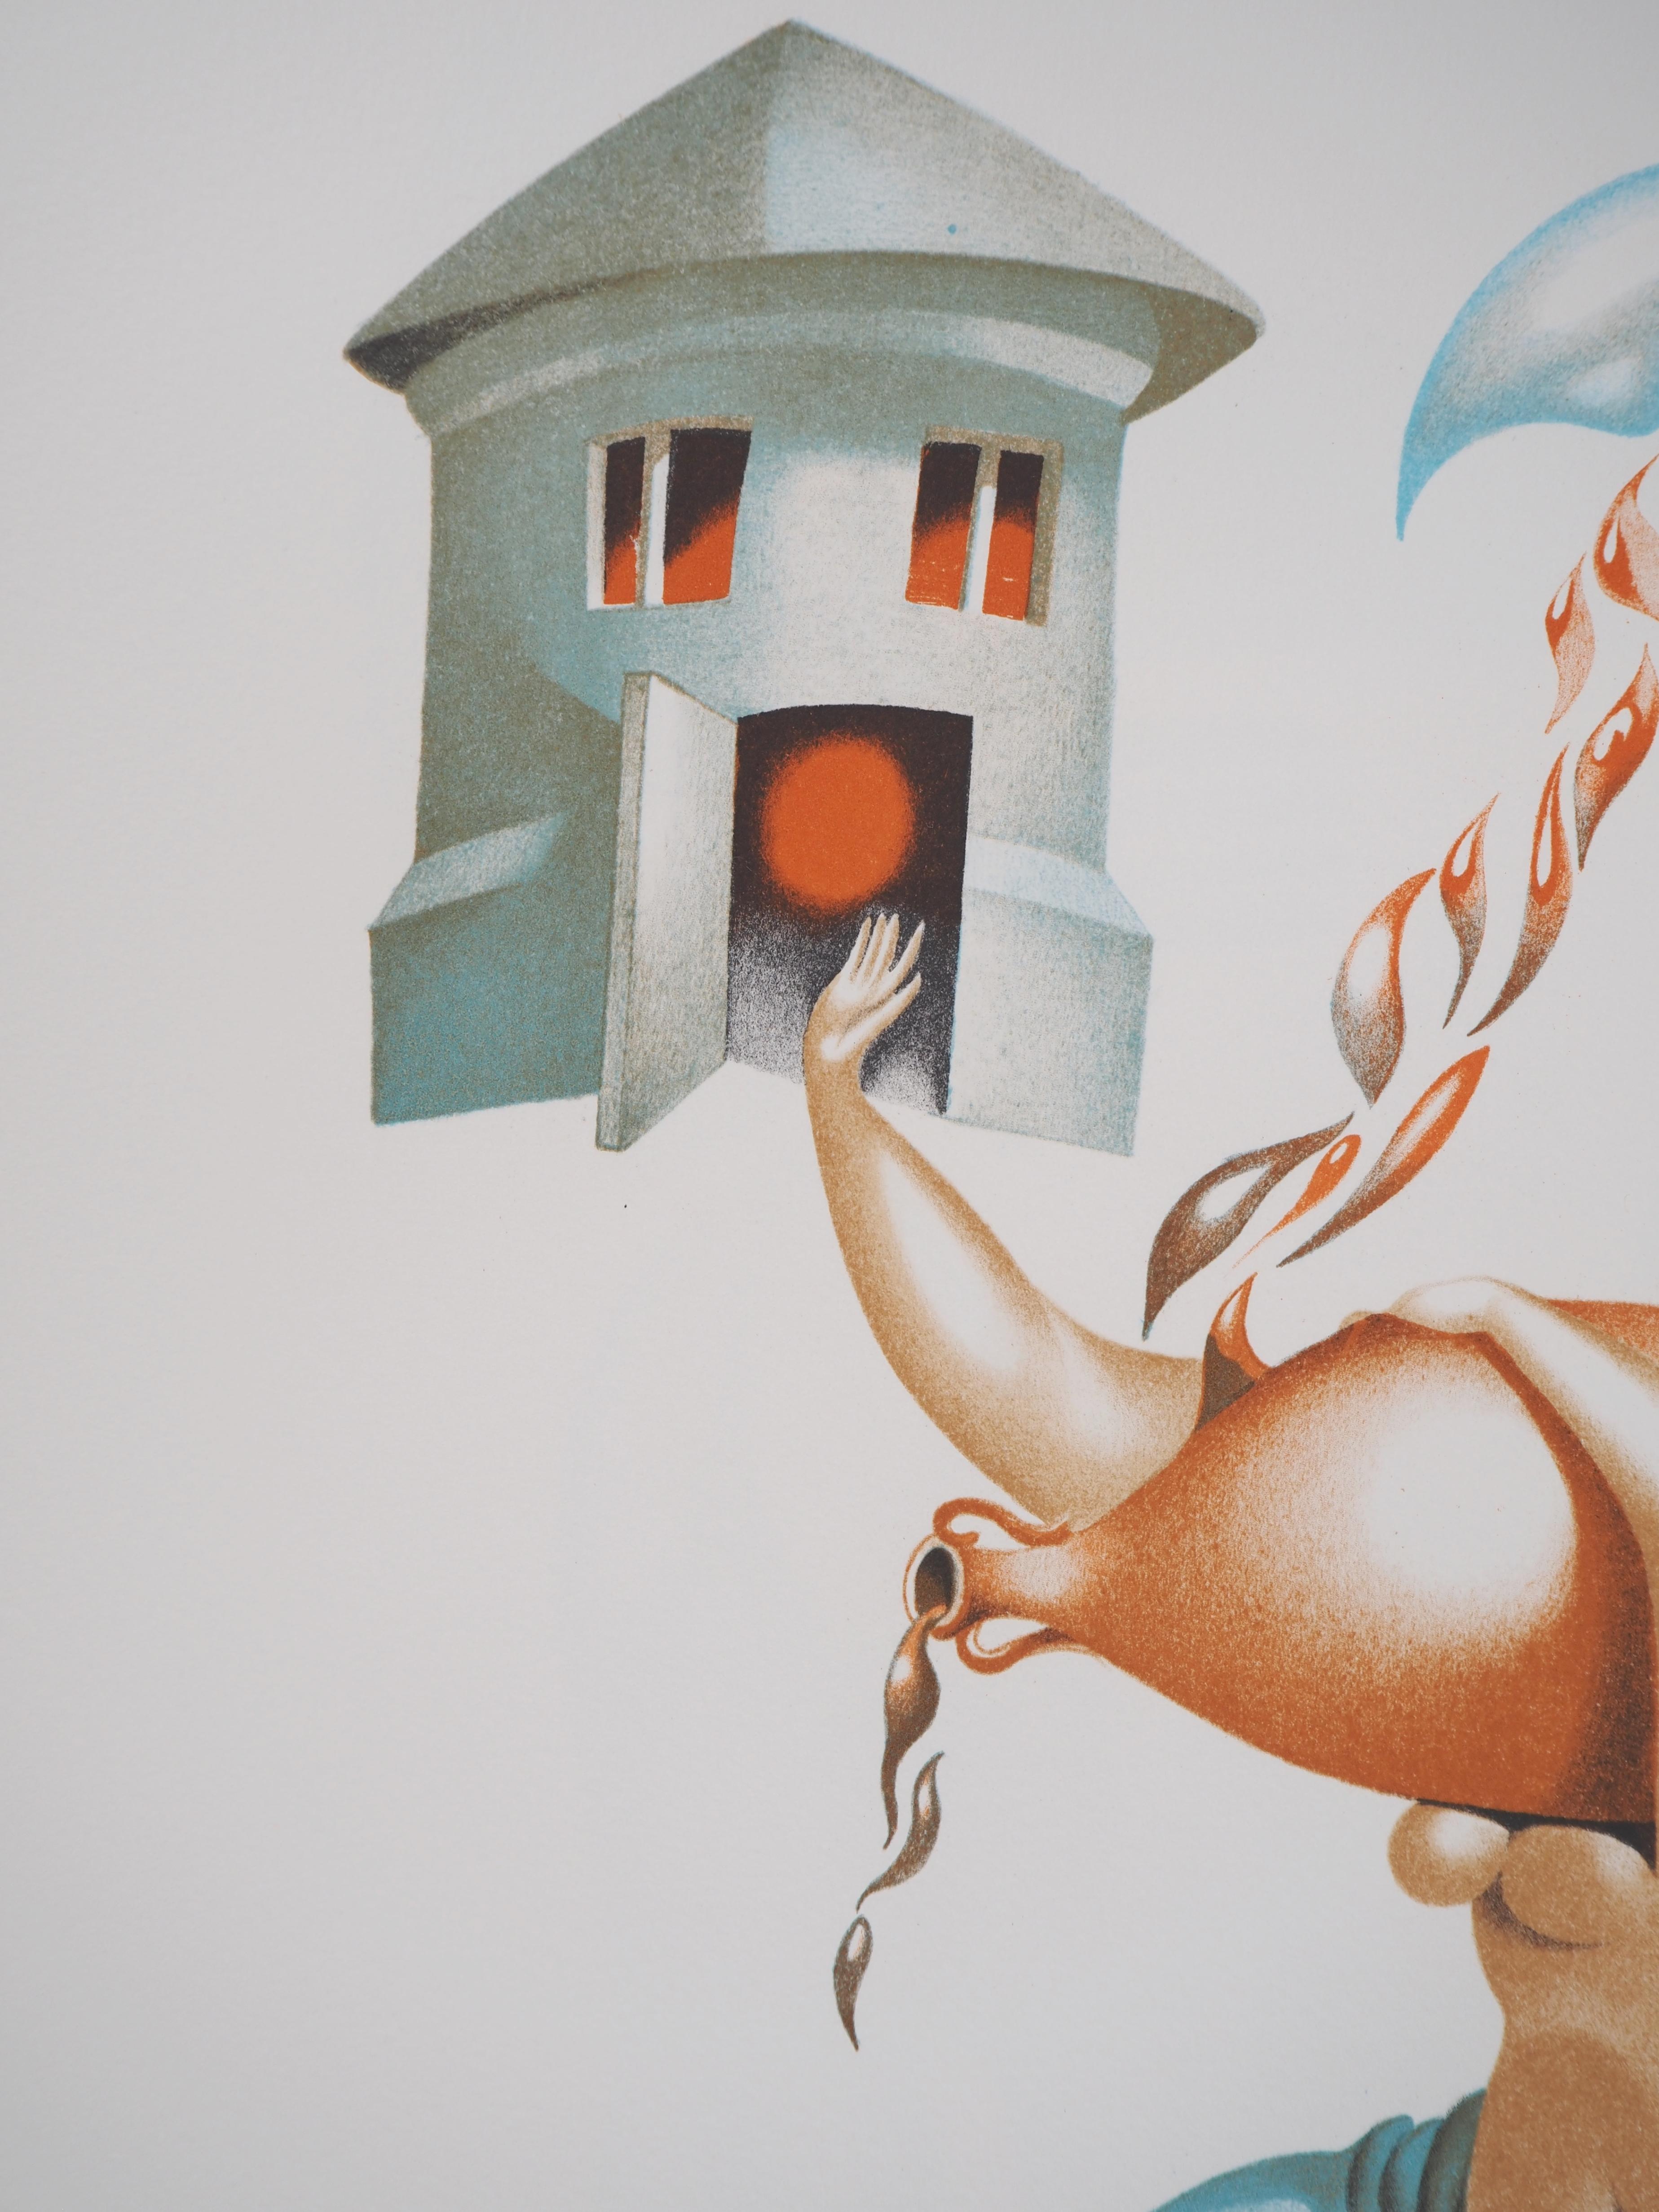 Jules Perahim (1914-2008)
Abondance : Lune, maison et vin, 1974

Lithographie originale
Signé au crayon par l'artiste.
Numéroté / 199
Sur vellum d'Arches 56 x 38 cm (c. 22 x 15 inches)

INFORMATION : Extrait du portfolio 